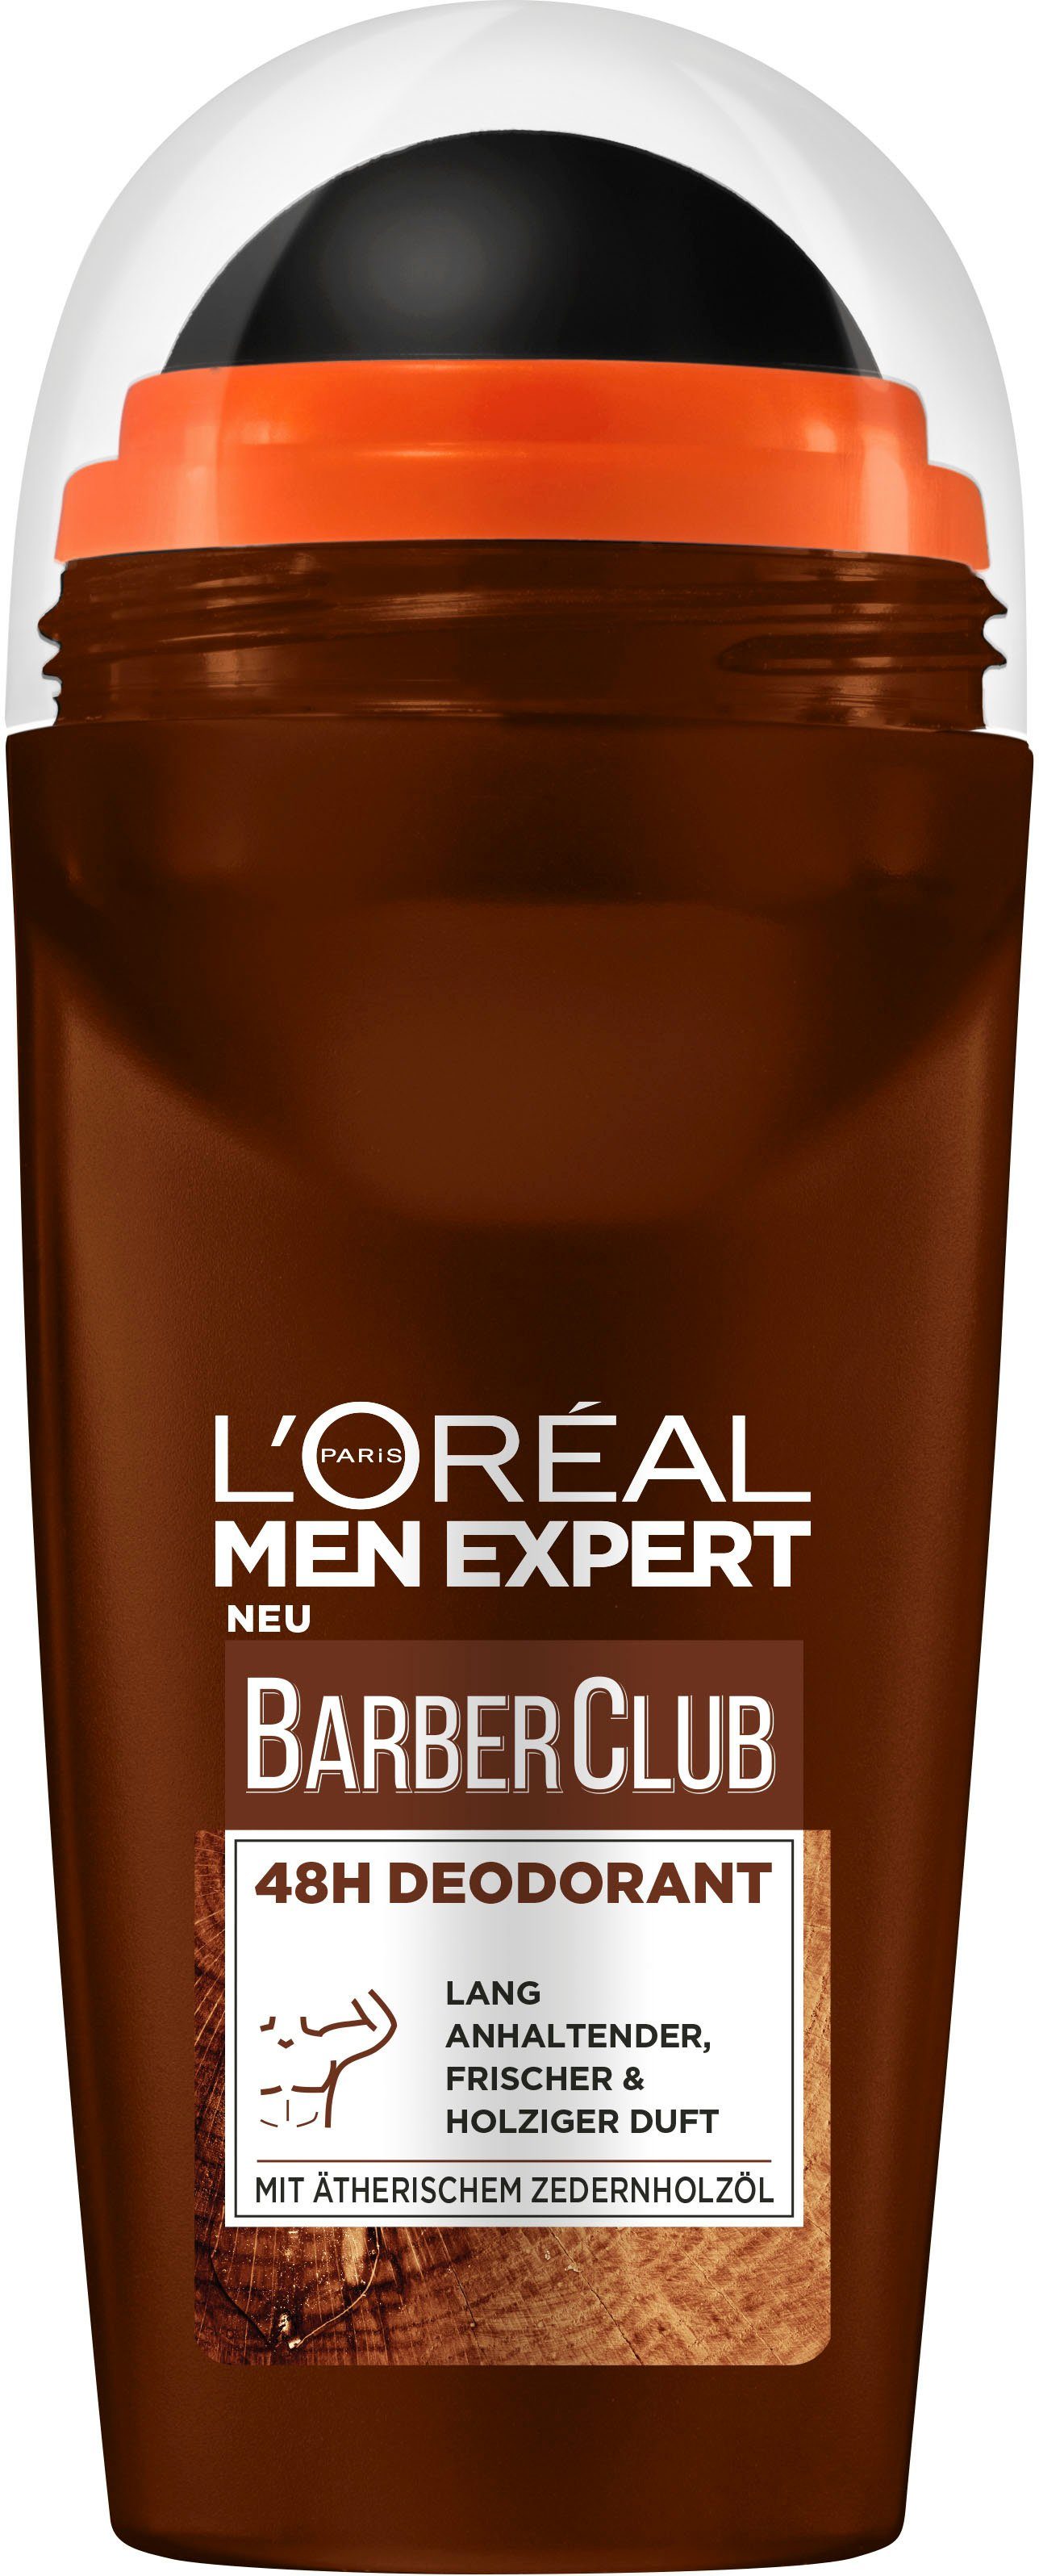 L'ORÉAL PARIS MEN EXPERT Deo-Roller L'Oréal Men Expert Barber Club 48h  Deodorant-Roll-On